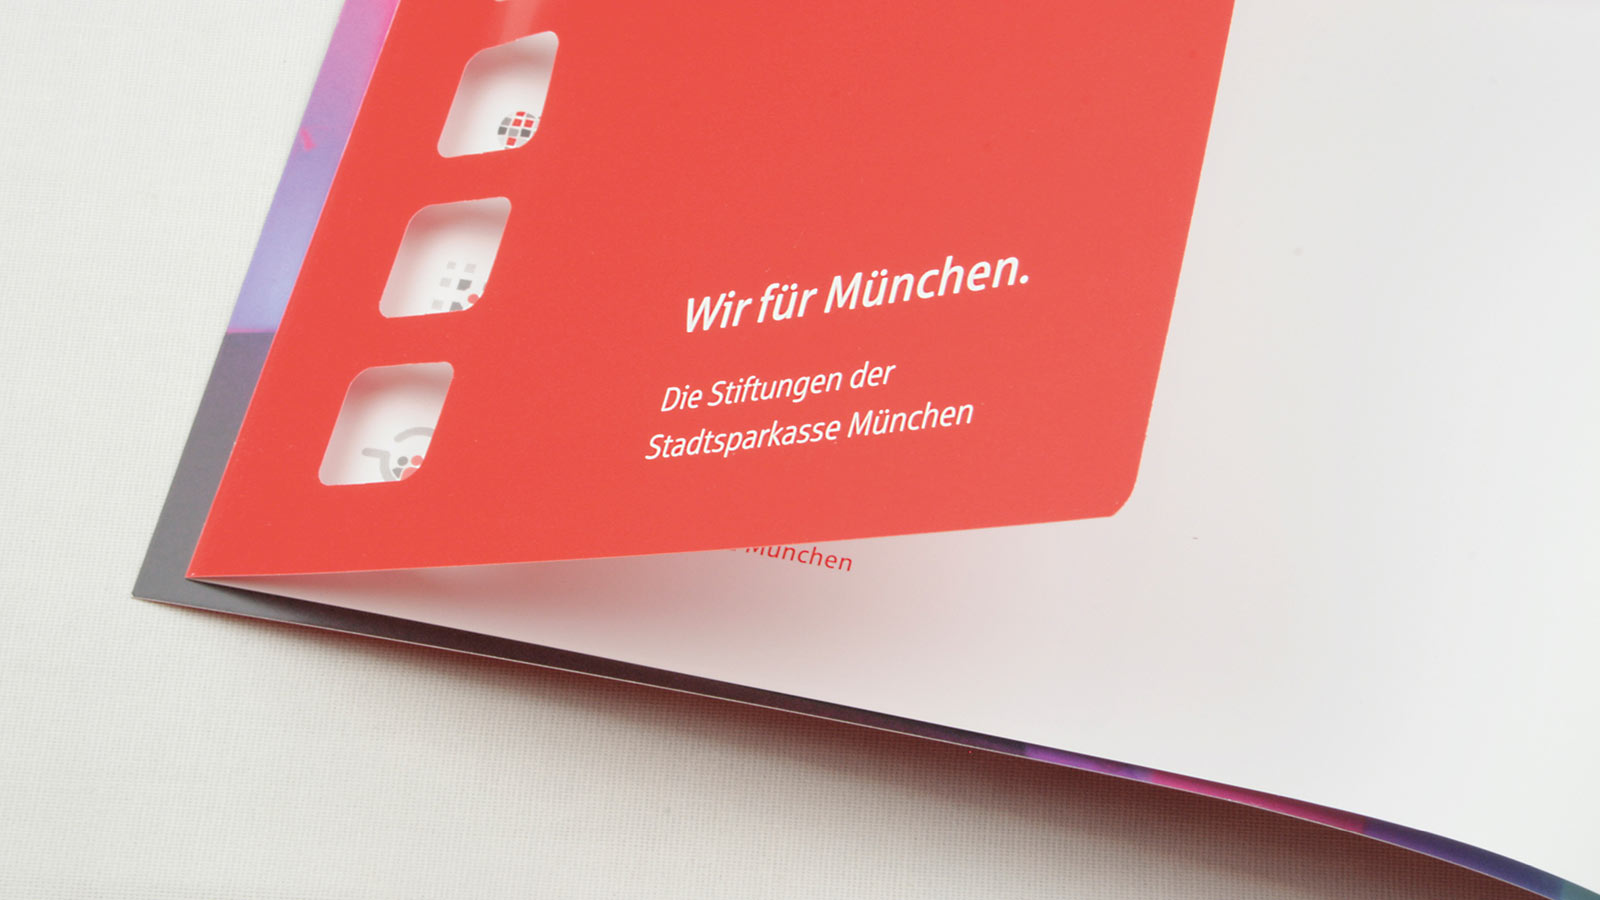 Papierstanzung mit Durchblick auf Folgeseite einer Broschüre der Stadtsparkasse München